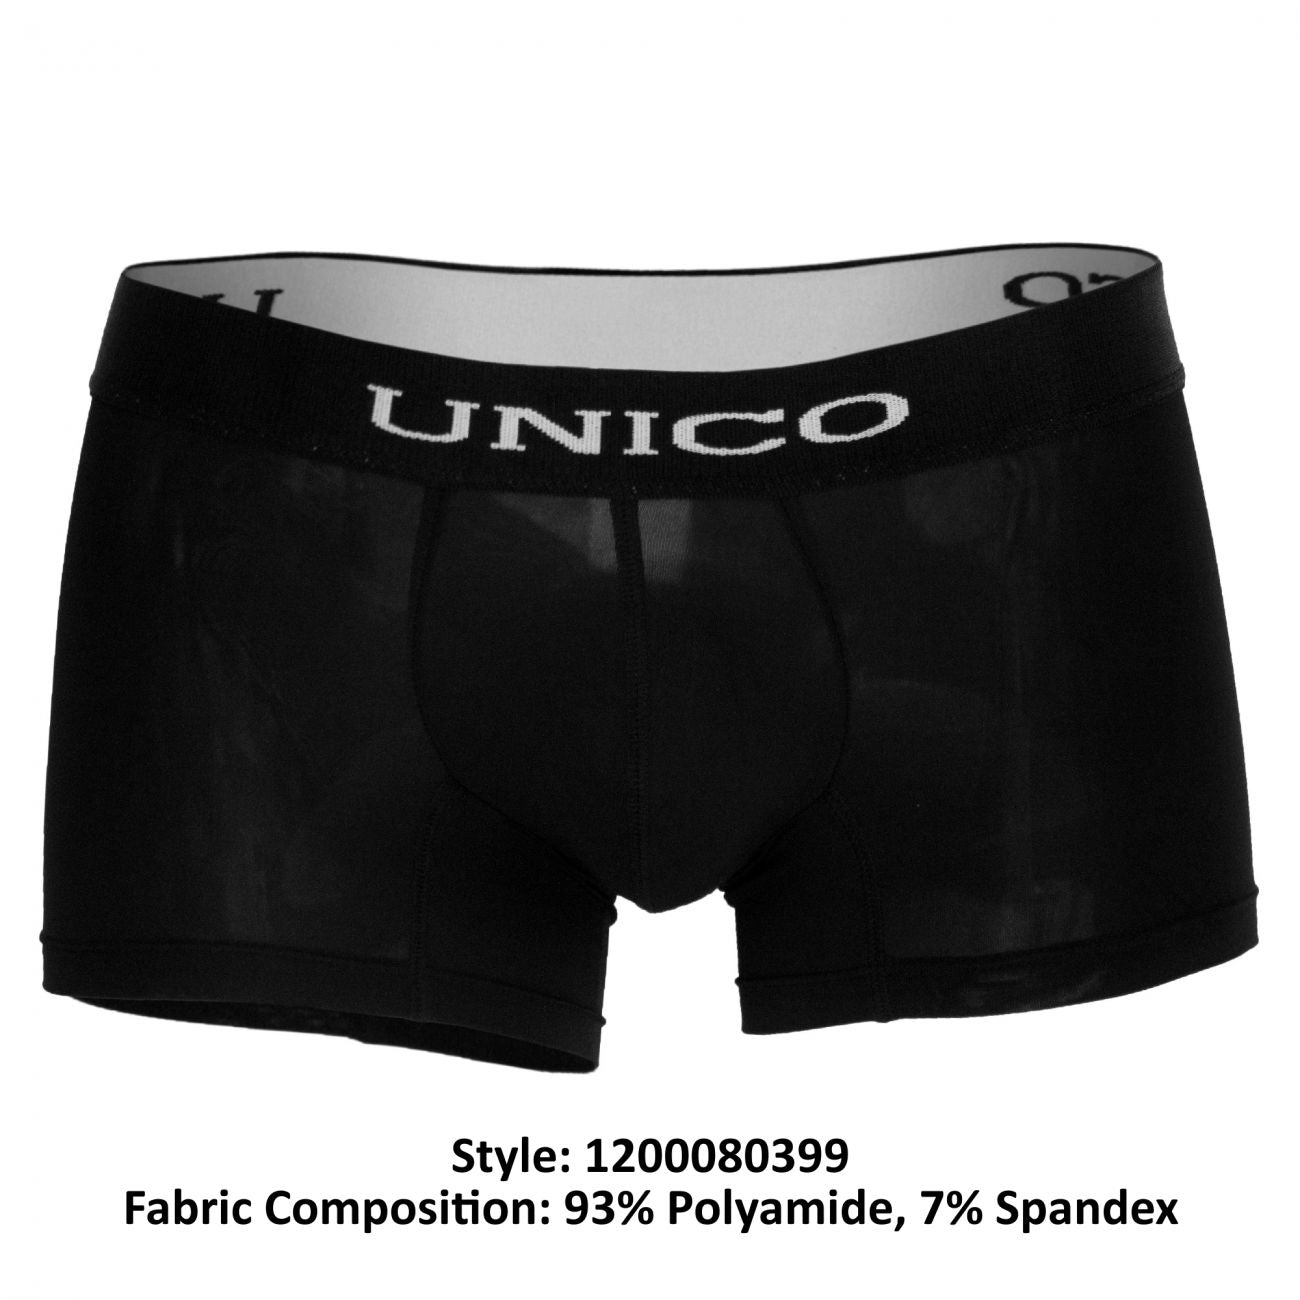 Unico (1212010010599) Boxer Briefs Intenso Microfiber